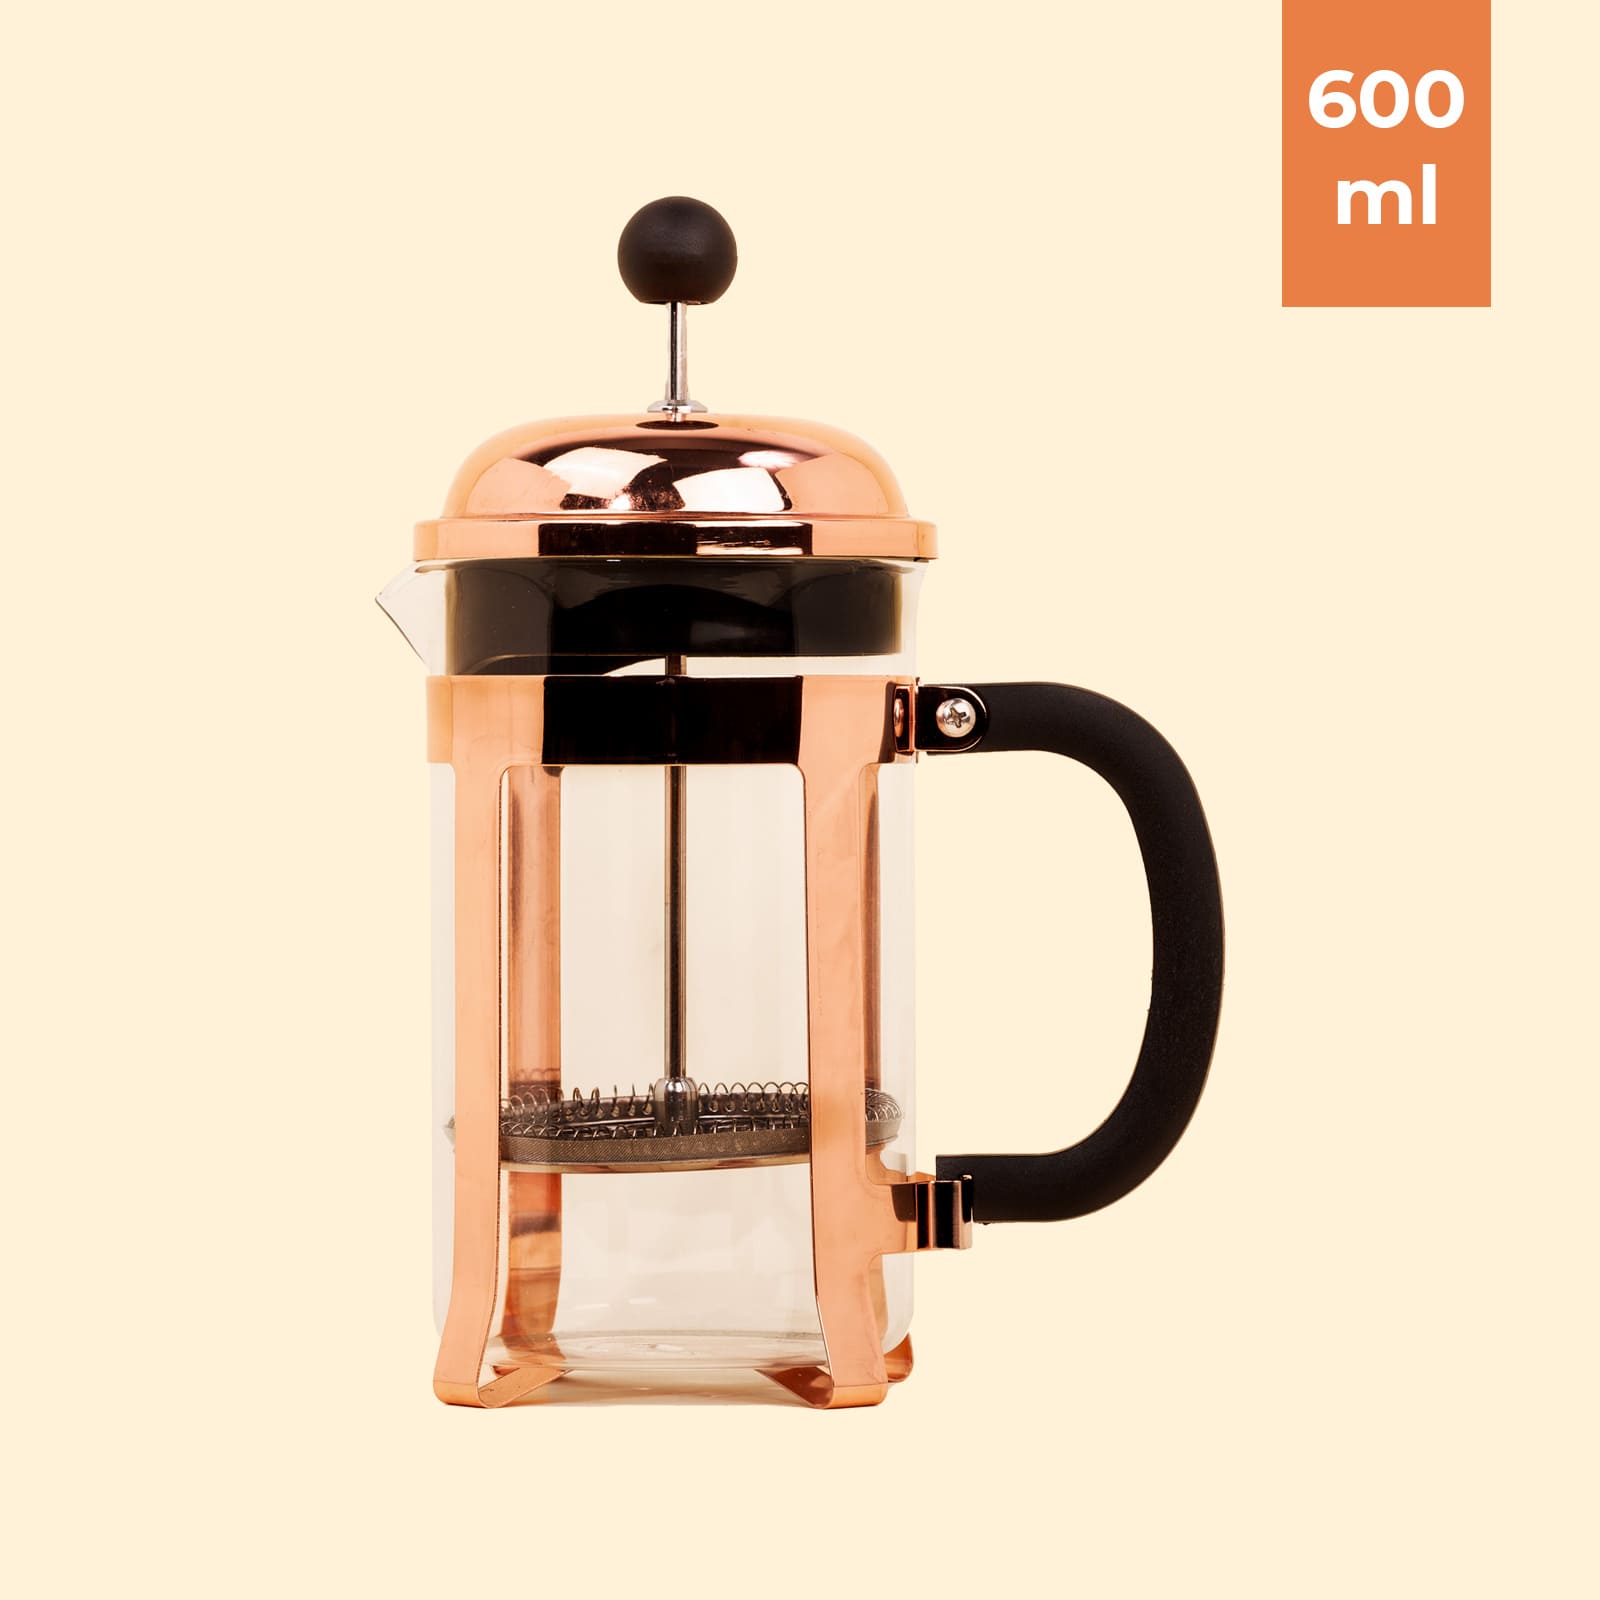 600ml - Prensa francesa para el té